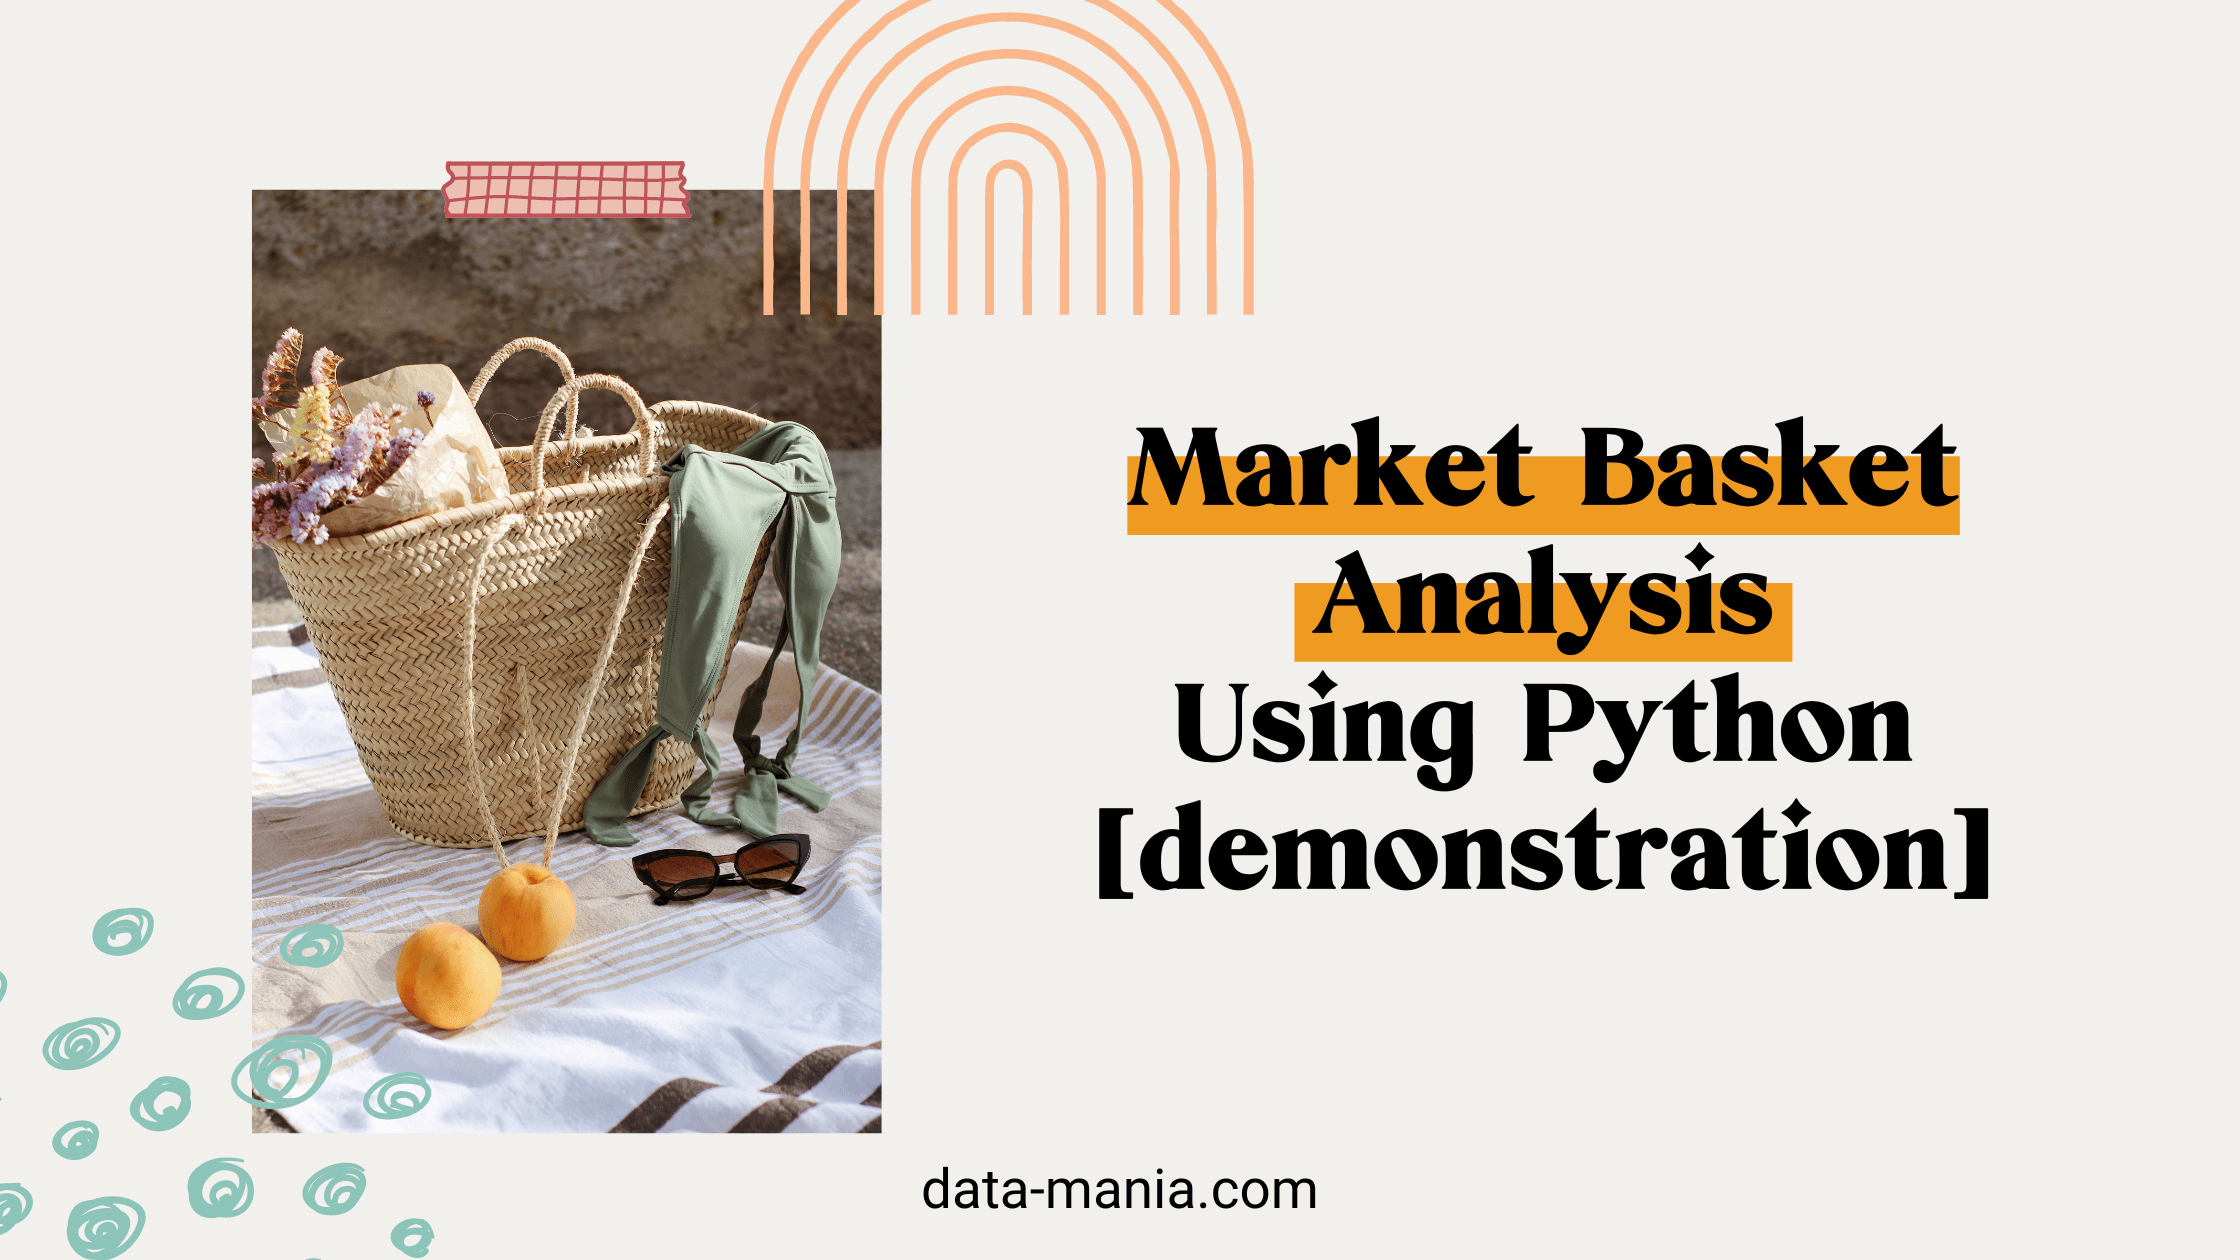 brief market basket analysis using Python